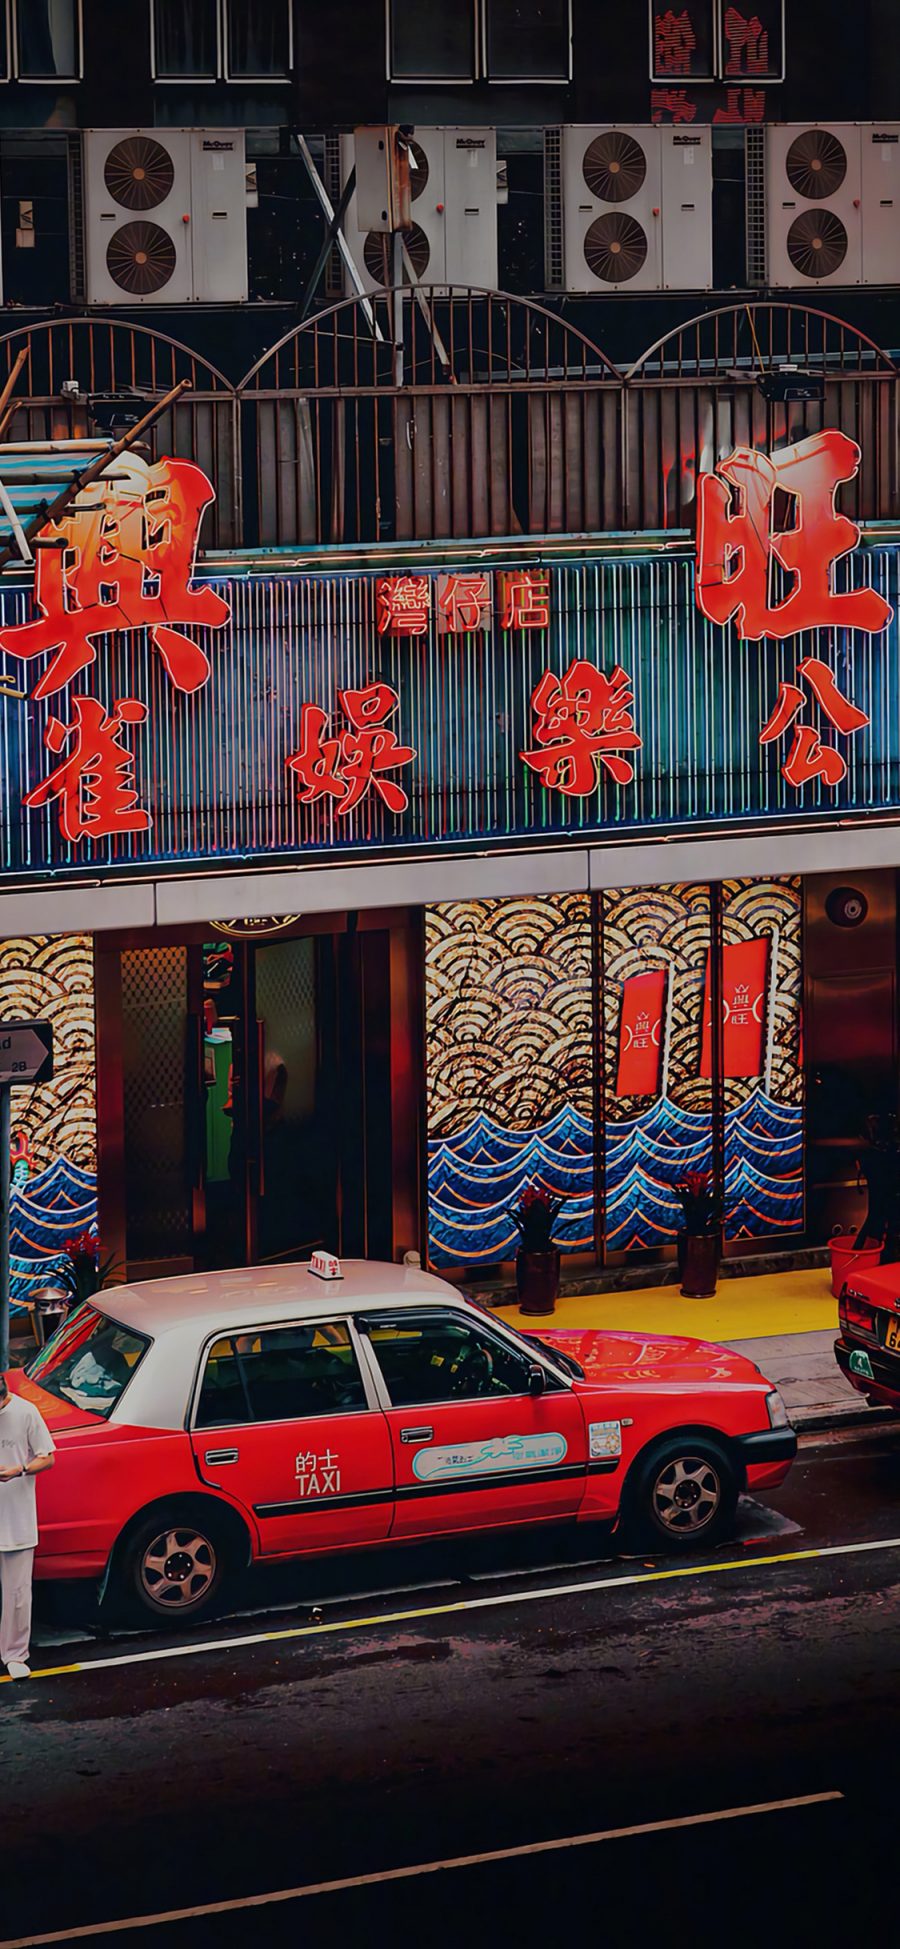 [2436×1125]香港 招牌 商铺 店铺 街道 的士 苹果手机壁纸图片